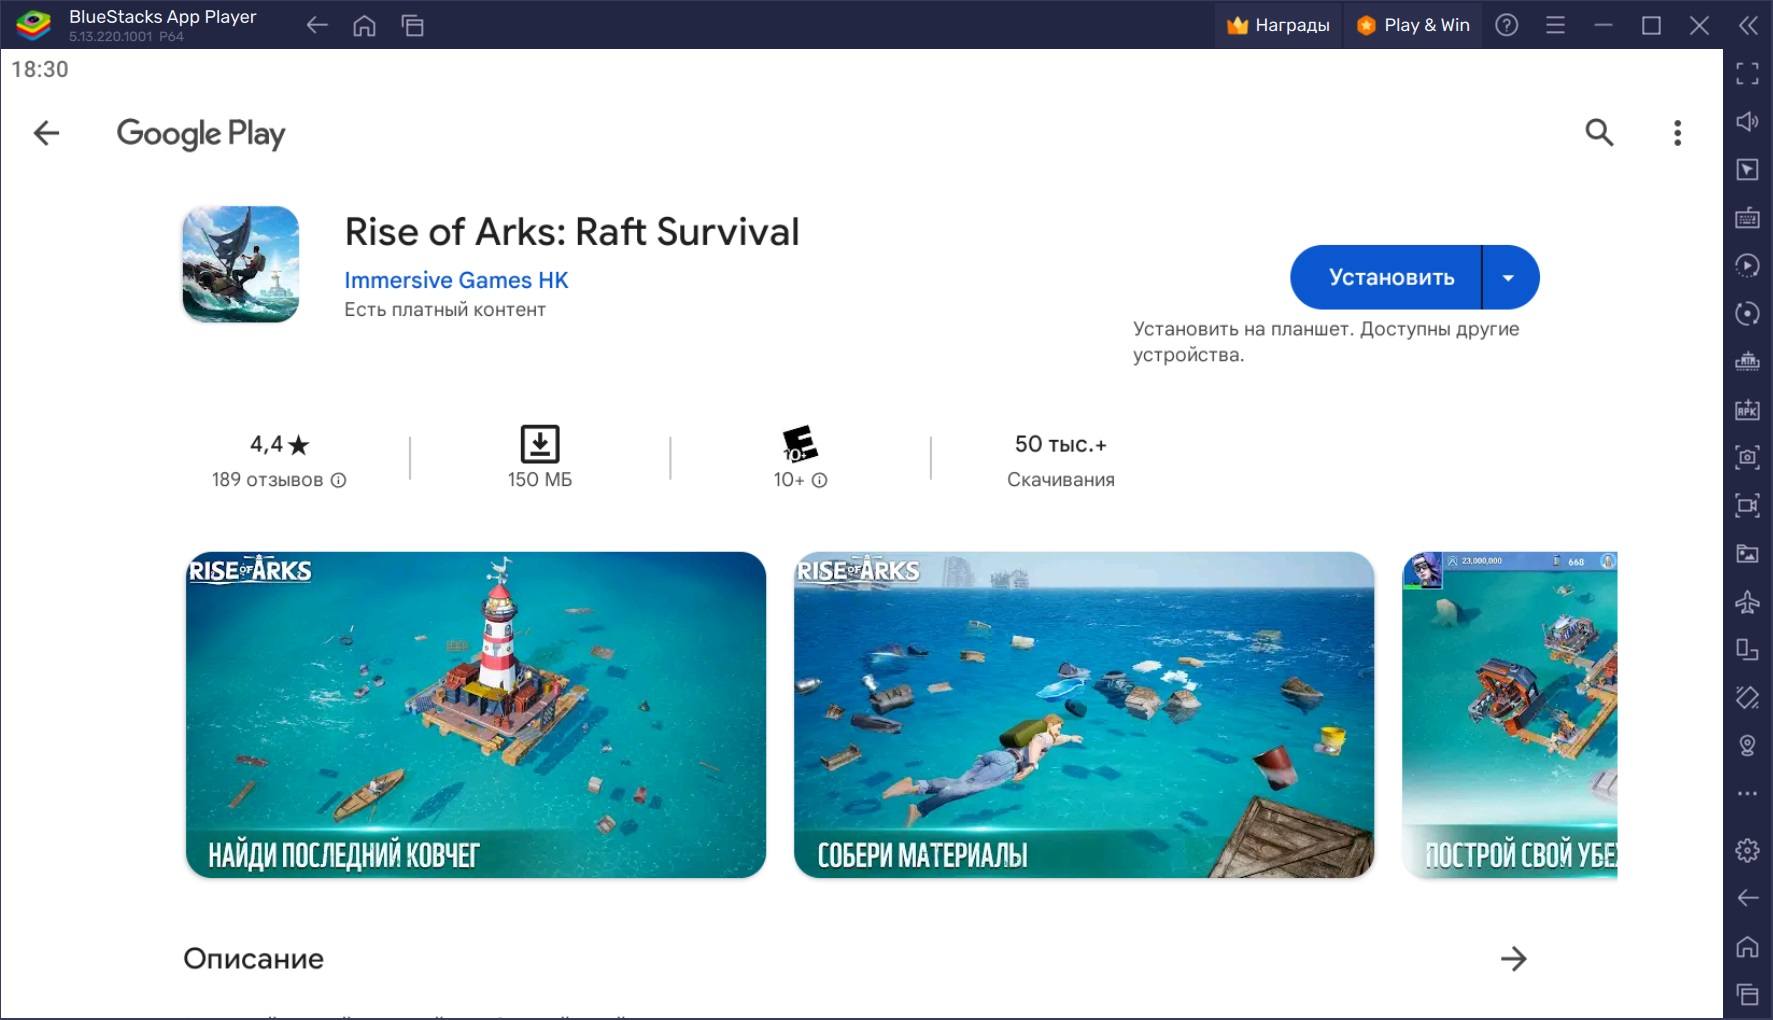 Как скачать и играть в Rise of Arks: Raft Survival на ПК с BlueStacks